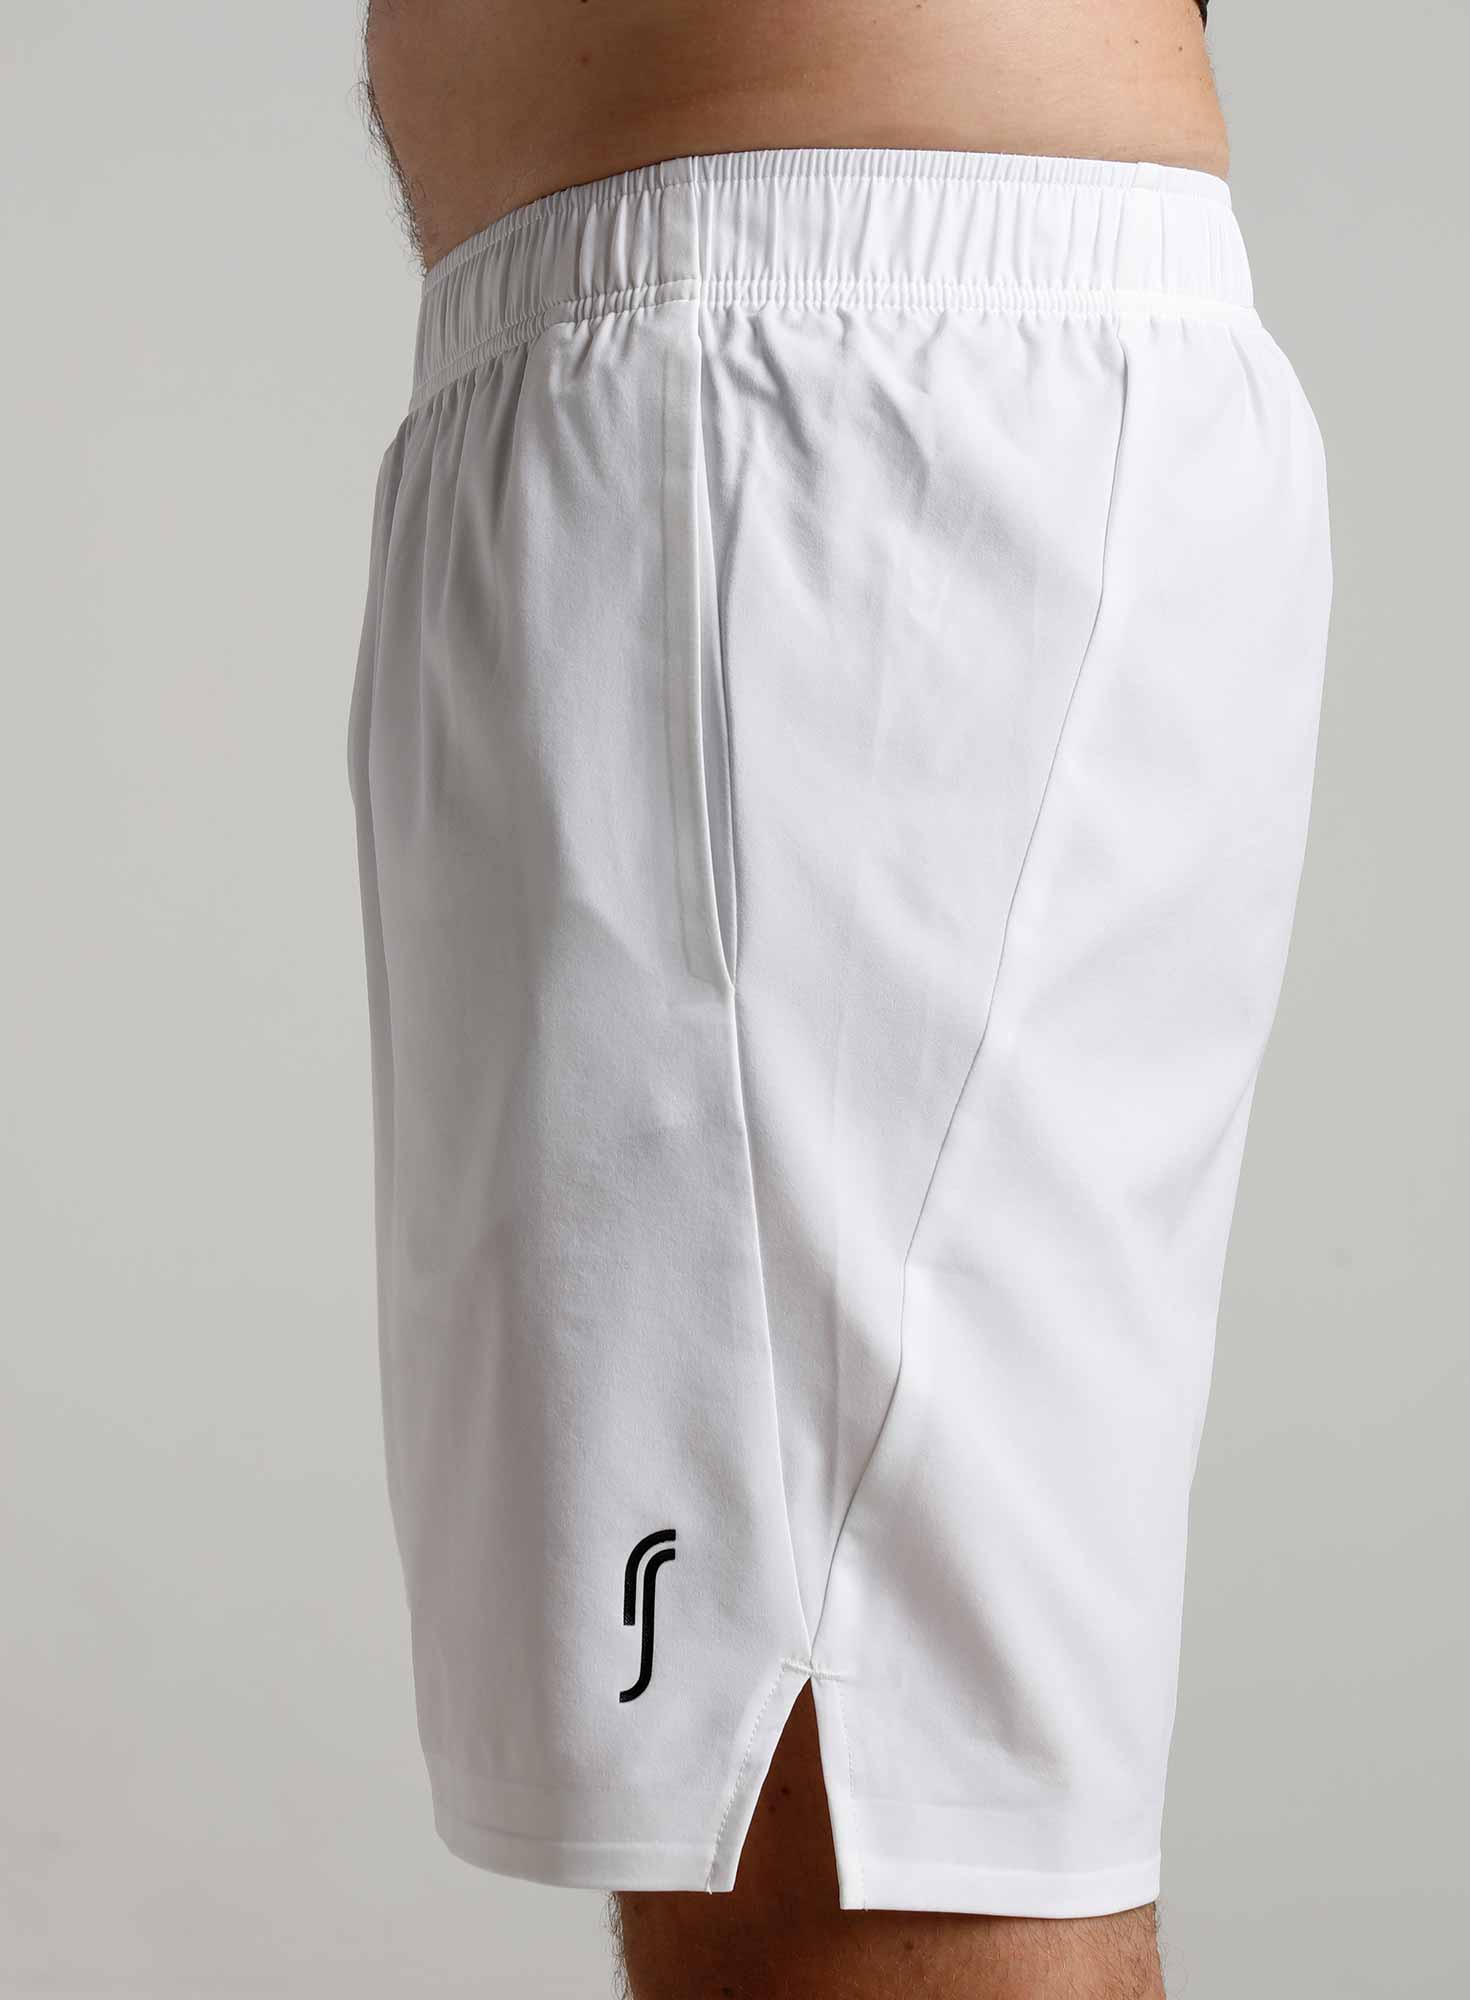 RS Padel Men's Performance Shorts (White)